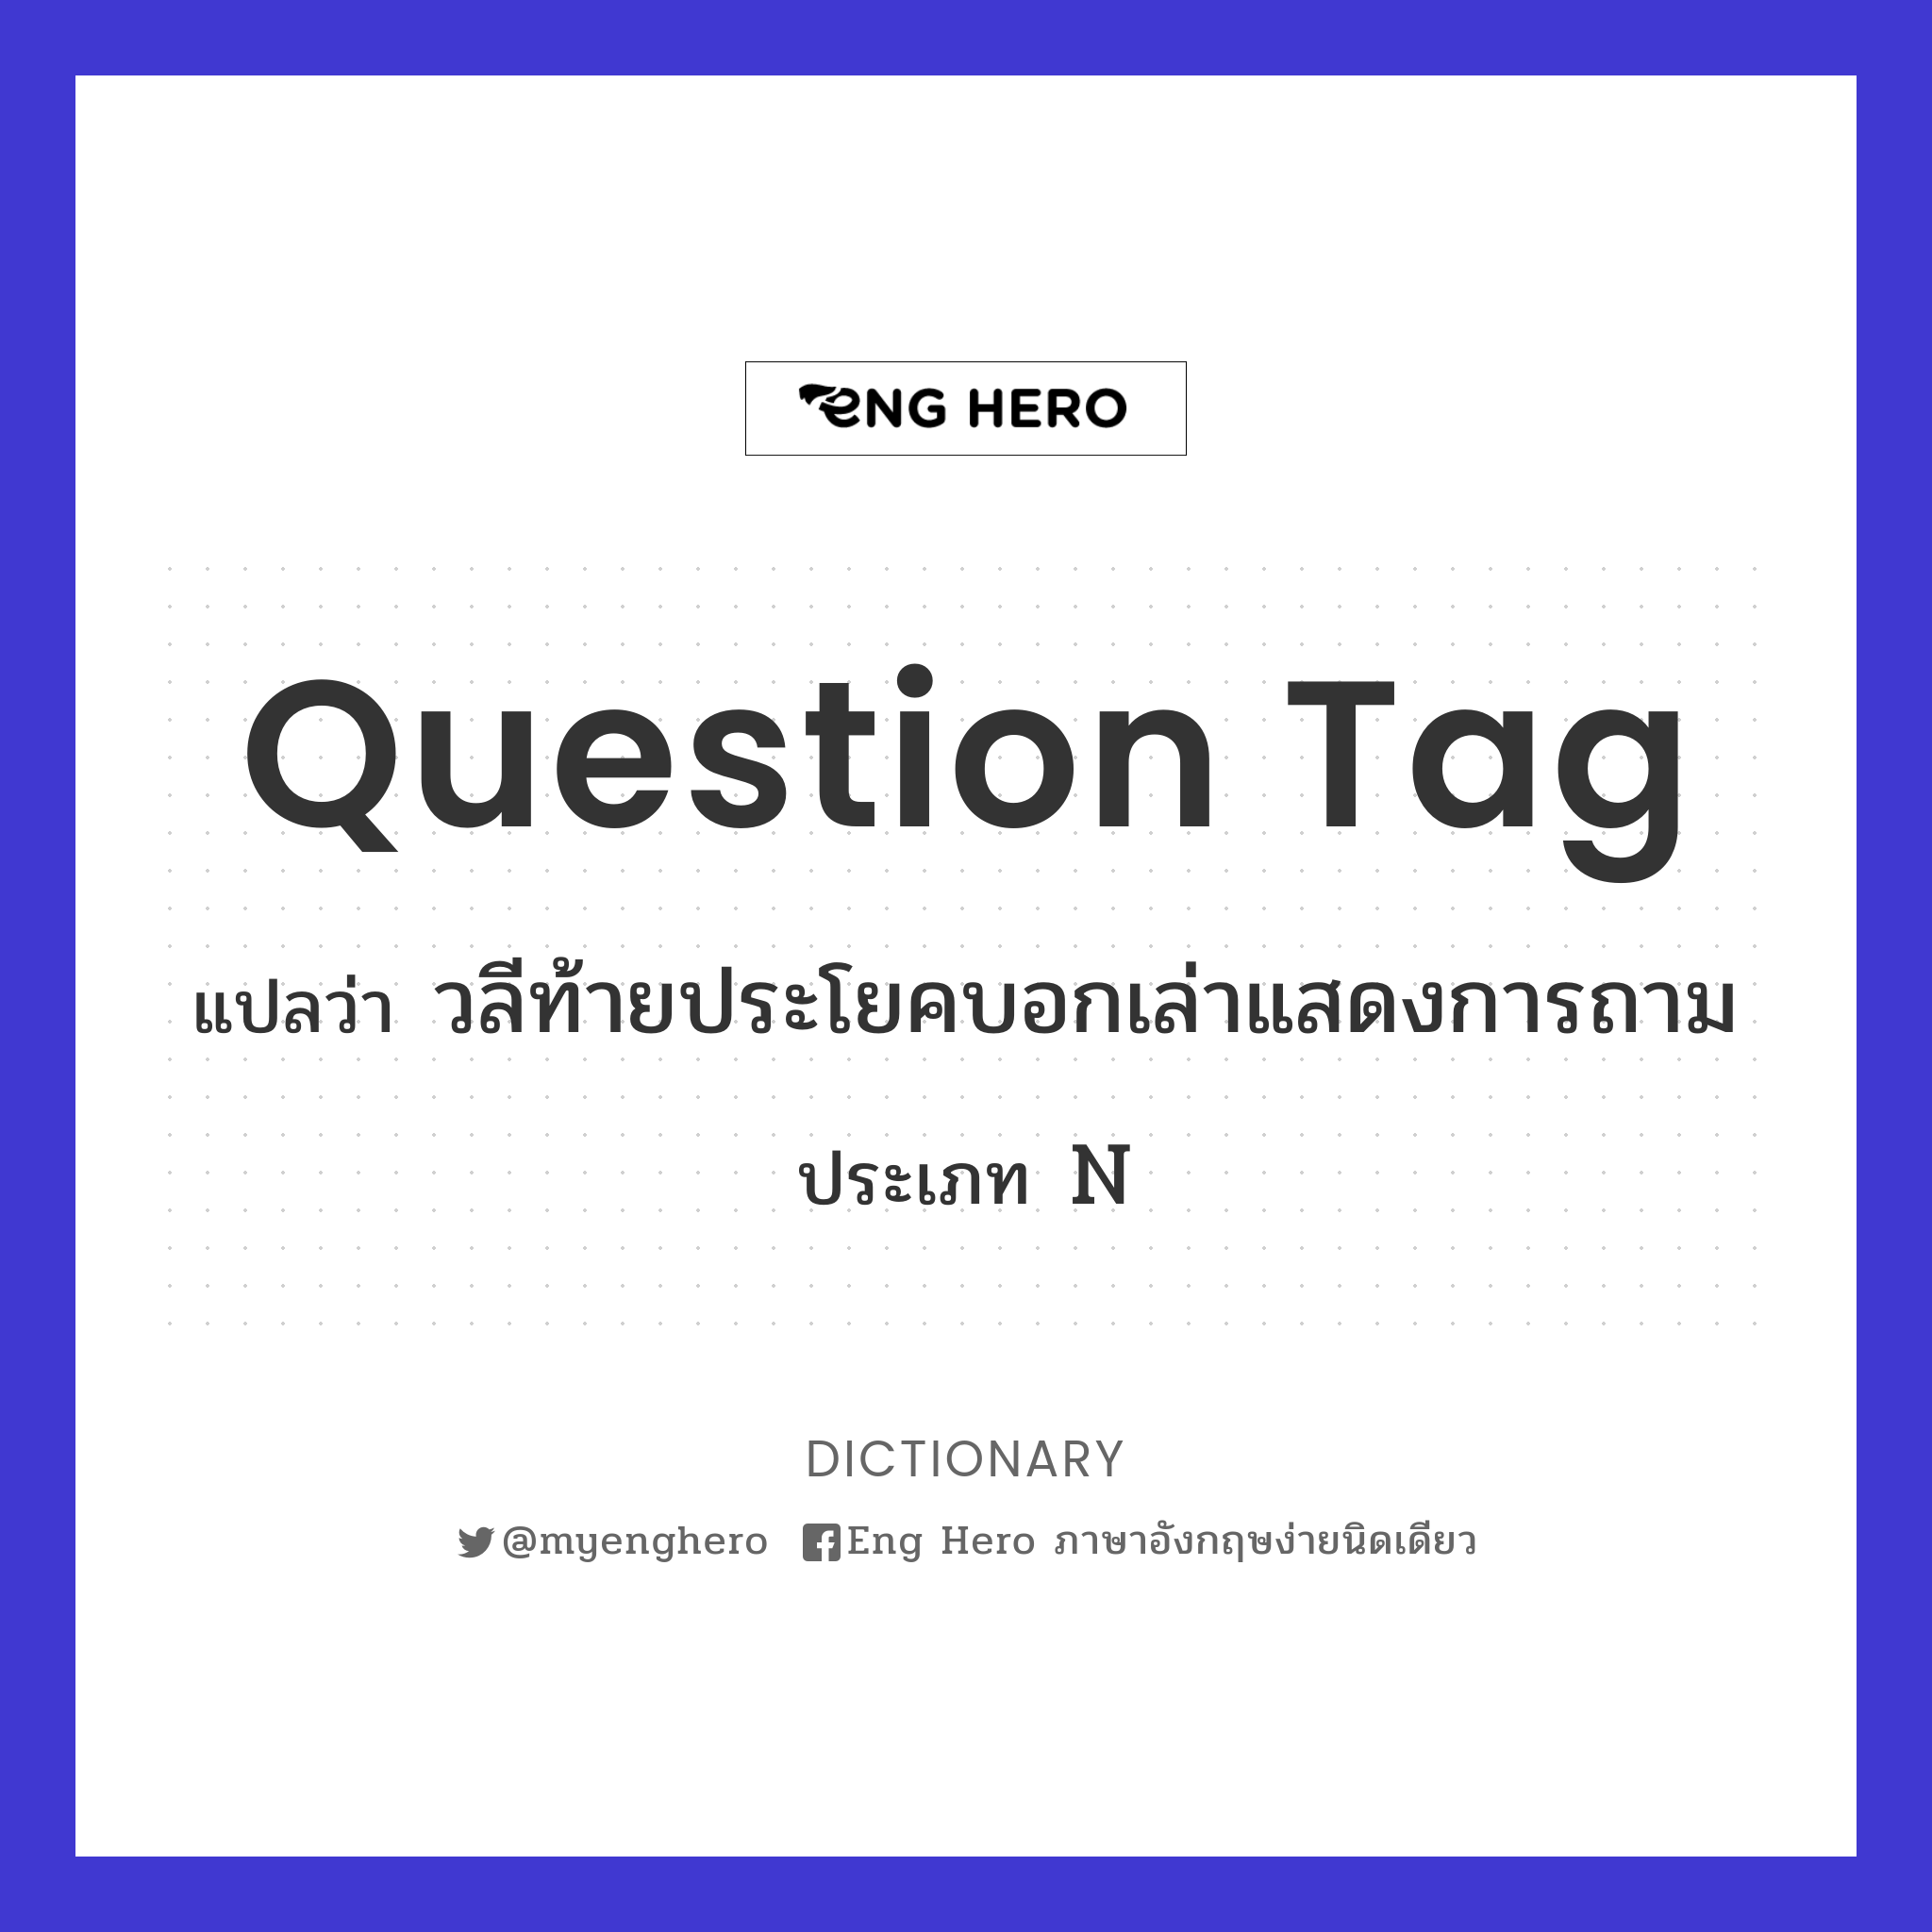 Question Tag แปลว่า วลีท้ายประโยคบอกเล่าแสดงการถาม | Eng Hero เรียน ภาษาอังกฤษ ออนไลน์ ฟรี